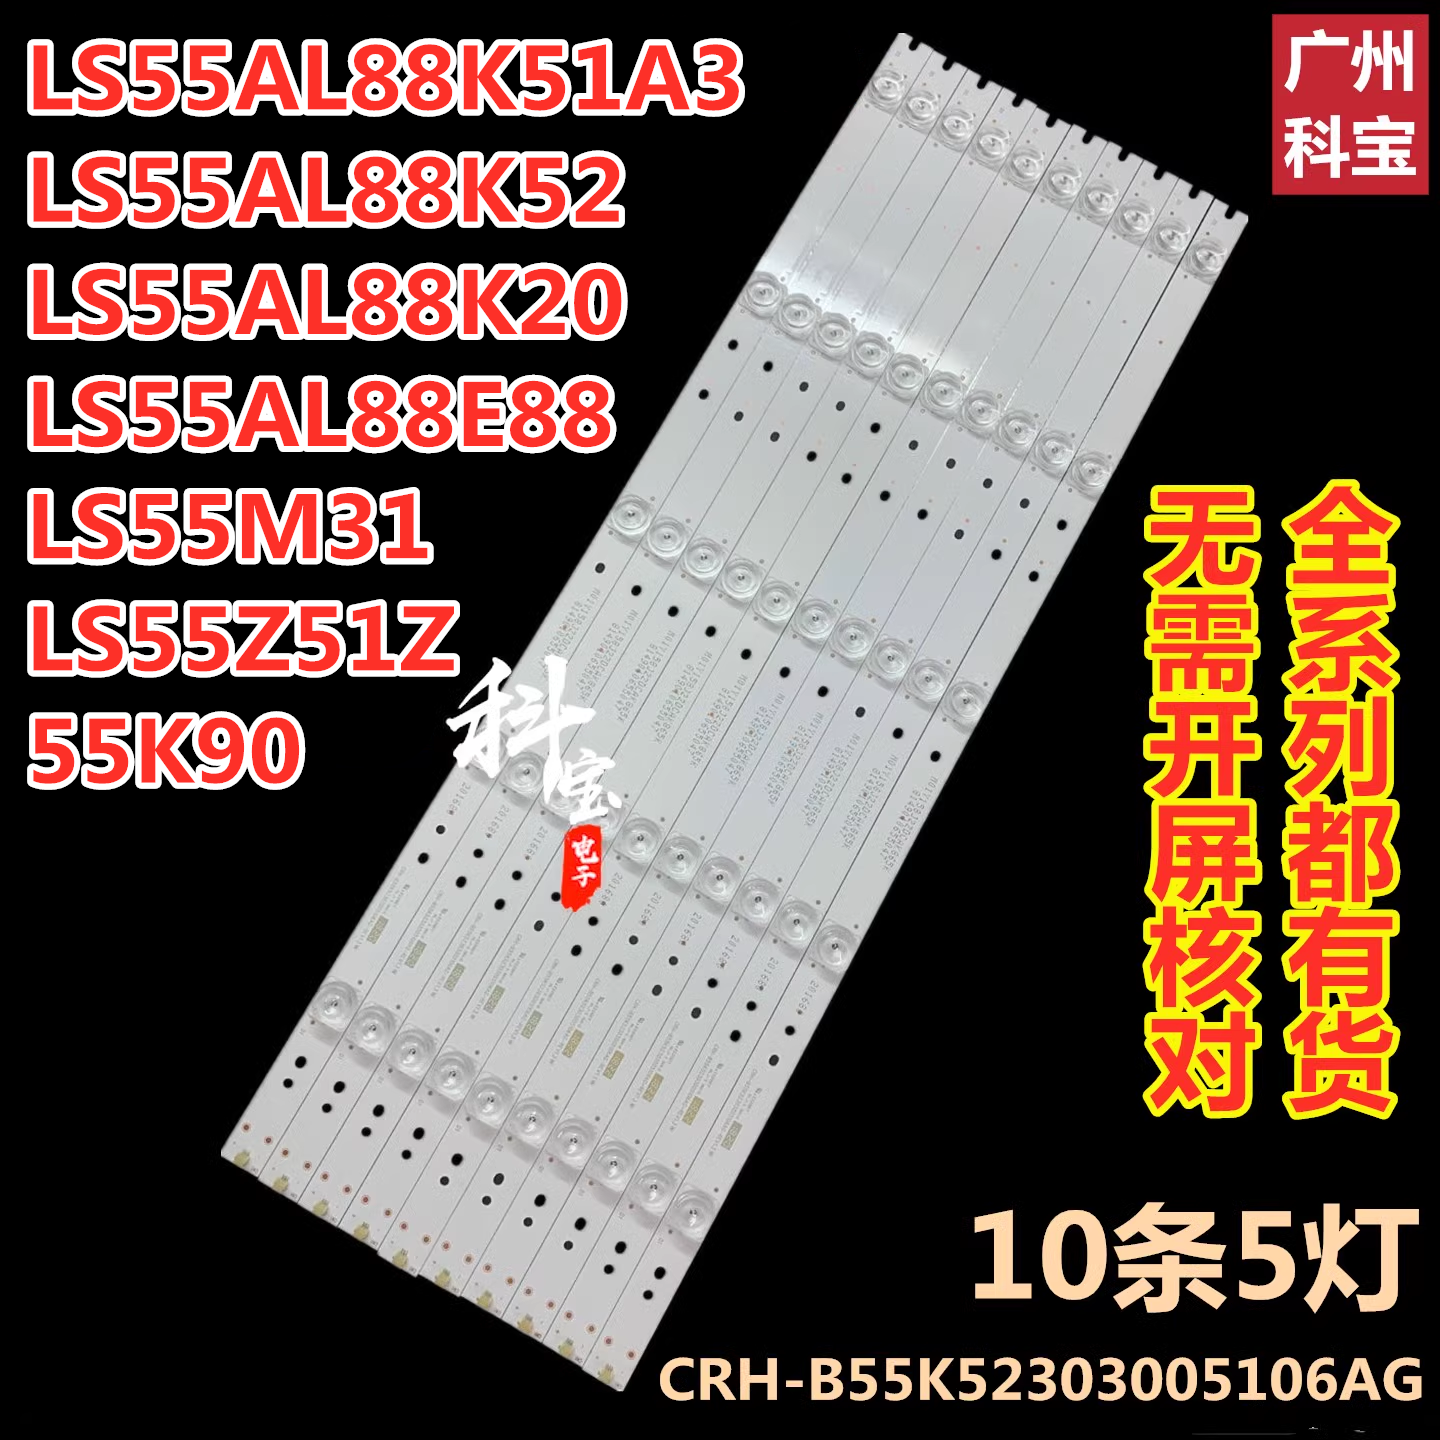 海尔LS55AL88K81/K20 LS55AL88K52/1A3灯条CRH-B55K52303005106AG